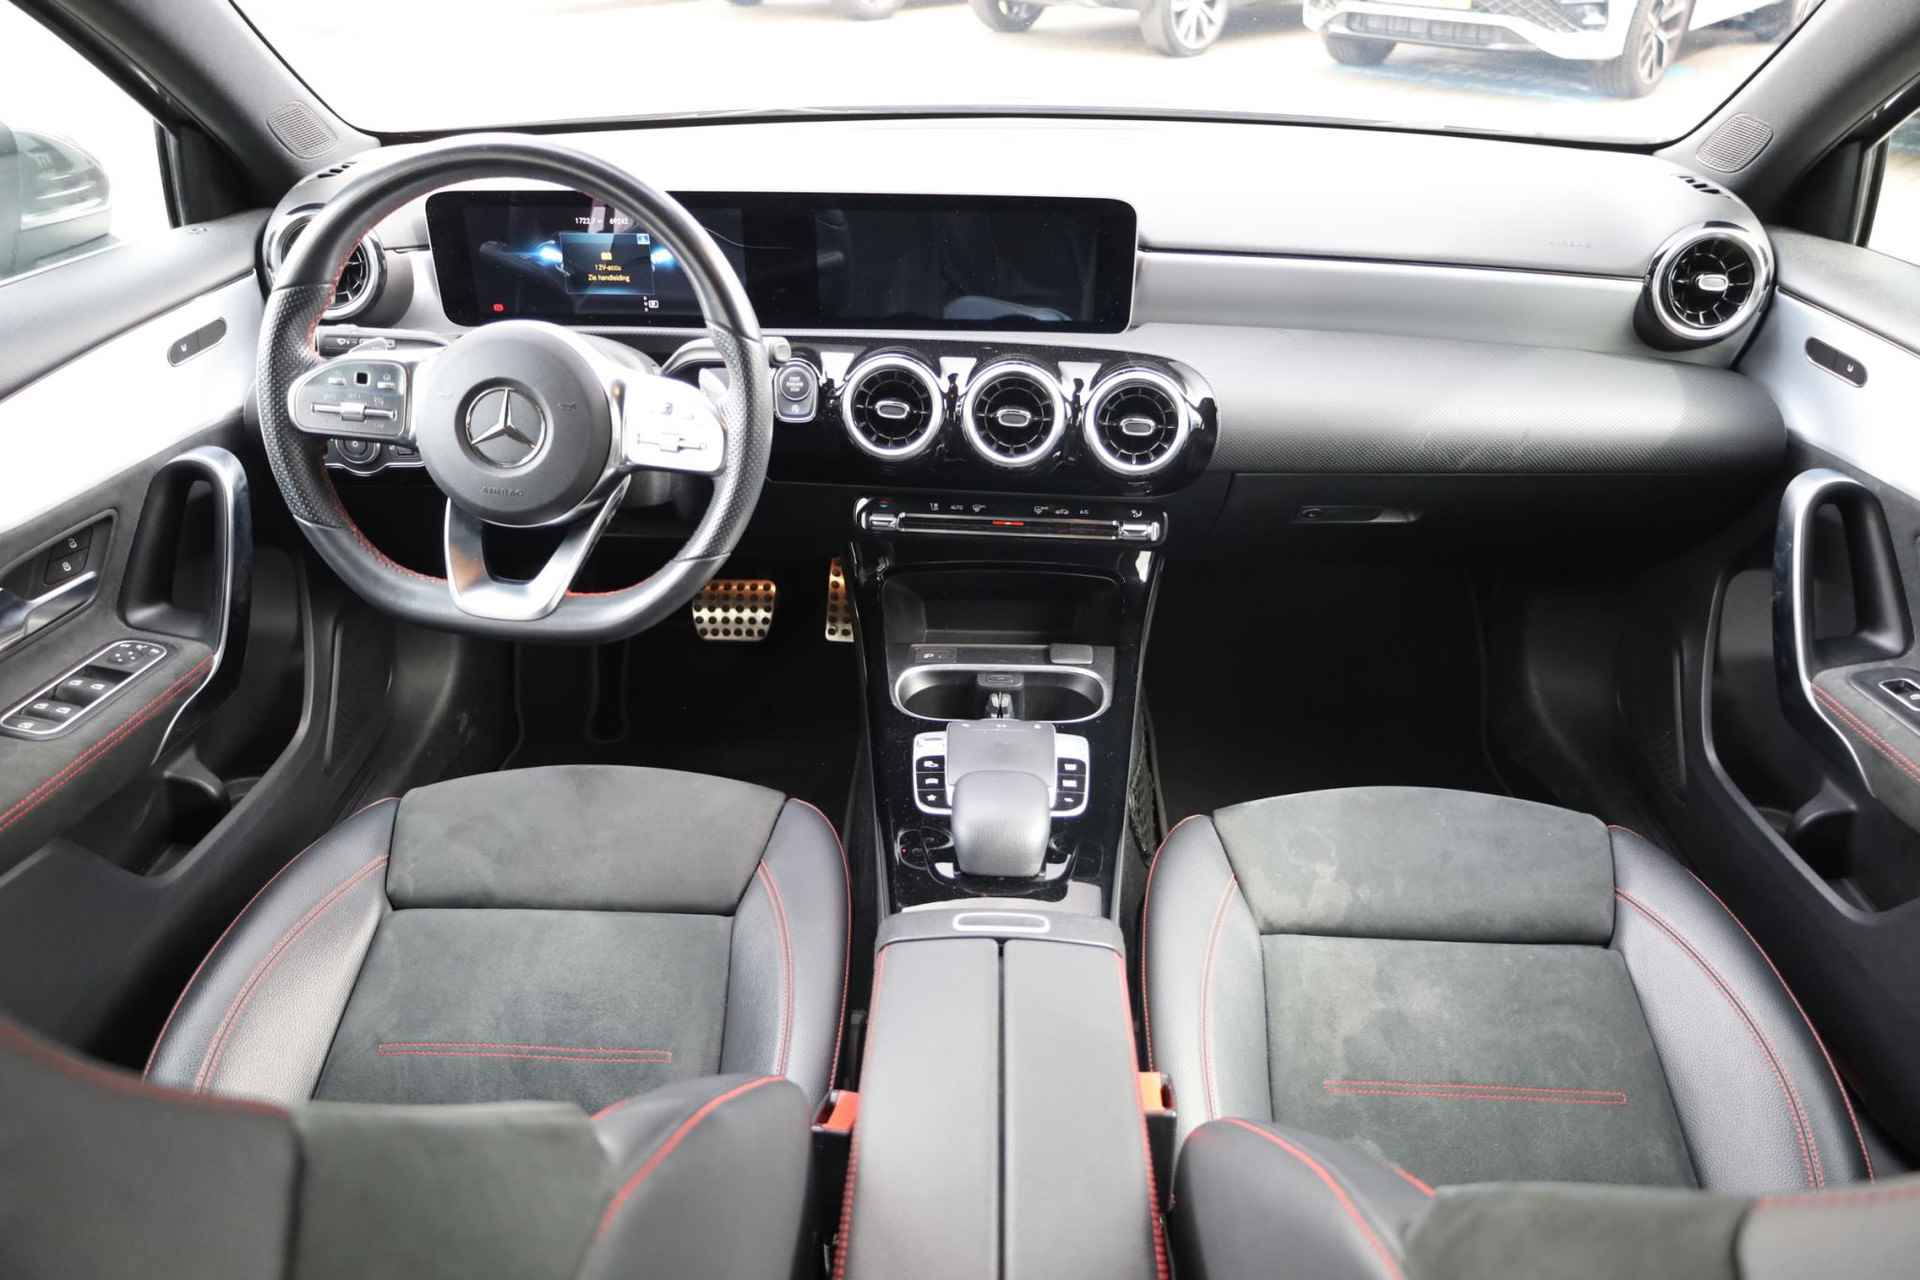 Mercedes-Benz A-klasse 200 Business Solution AMG 120KW/163PK automaat, Leder / alcantara, winterset LMV digitaal dashboard, navigatie, LED verlichting voor en achter, 18" LMV, stoelverwarming, parkeersensoren voor en achter, AMG bumpers - 4/44